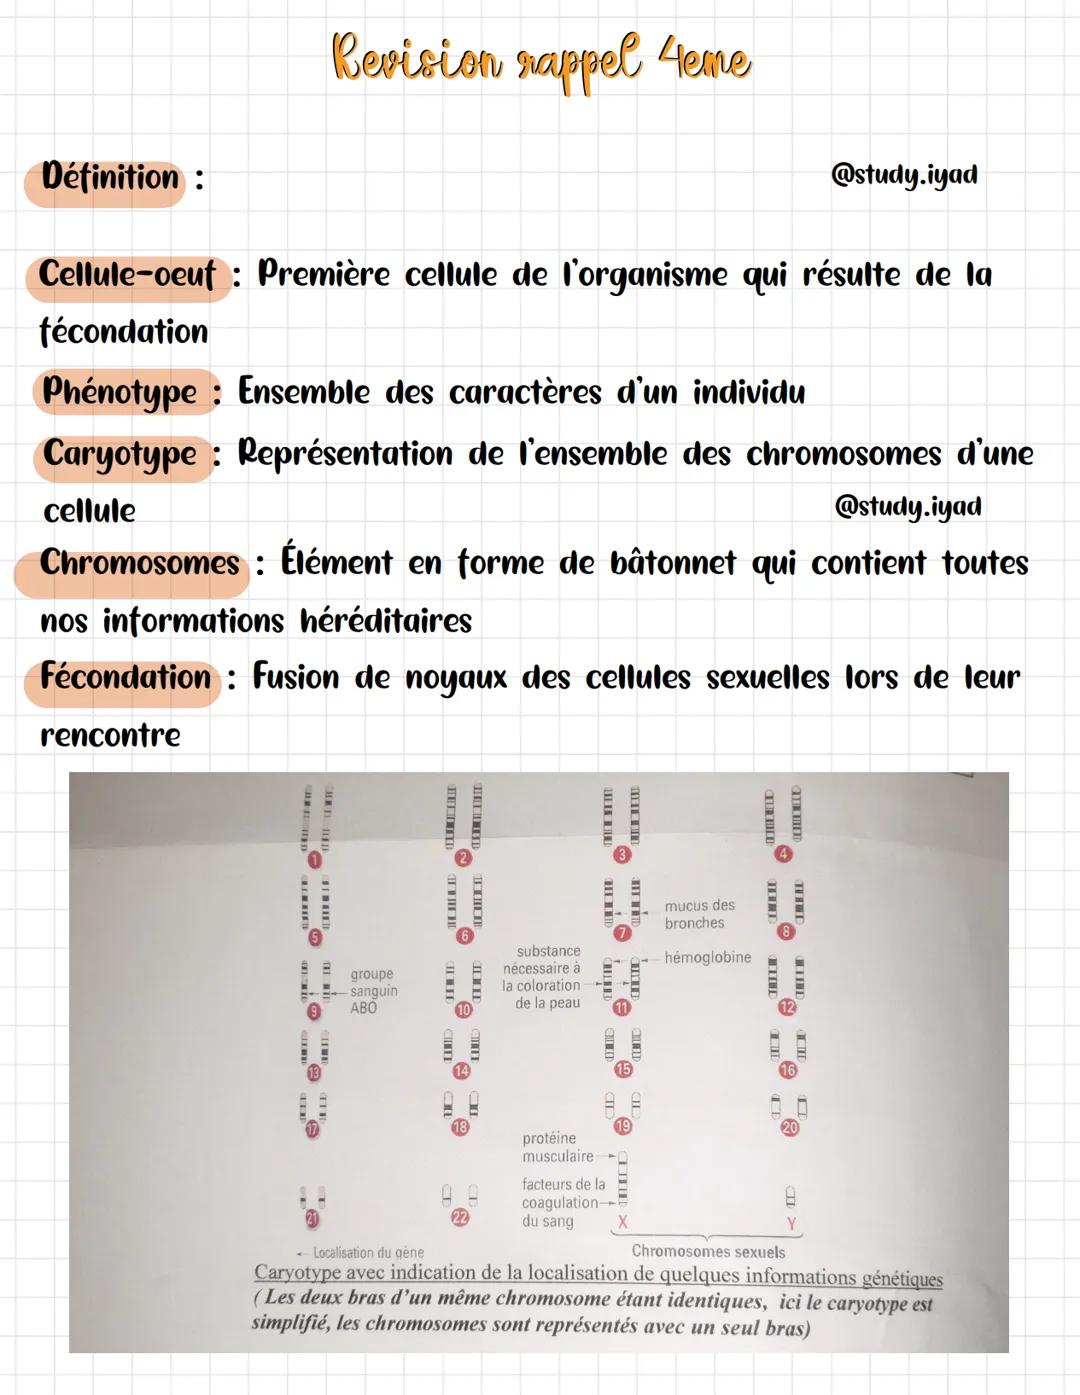 Définition :
Revision rappel 4eme
Cellule-oeuf : Première cellule de l'organisme qui résulte de la
fécondation
Phénotype : Ensemble des cara